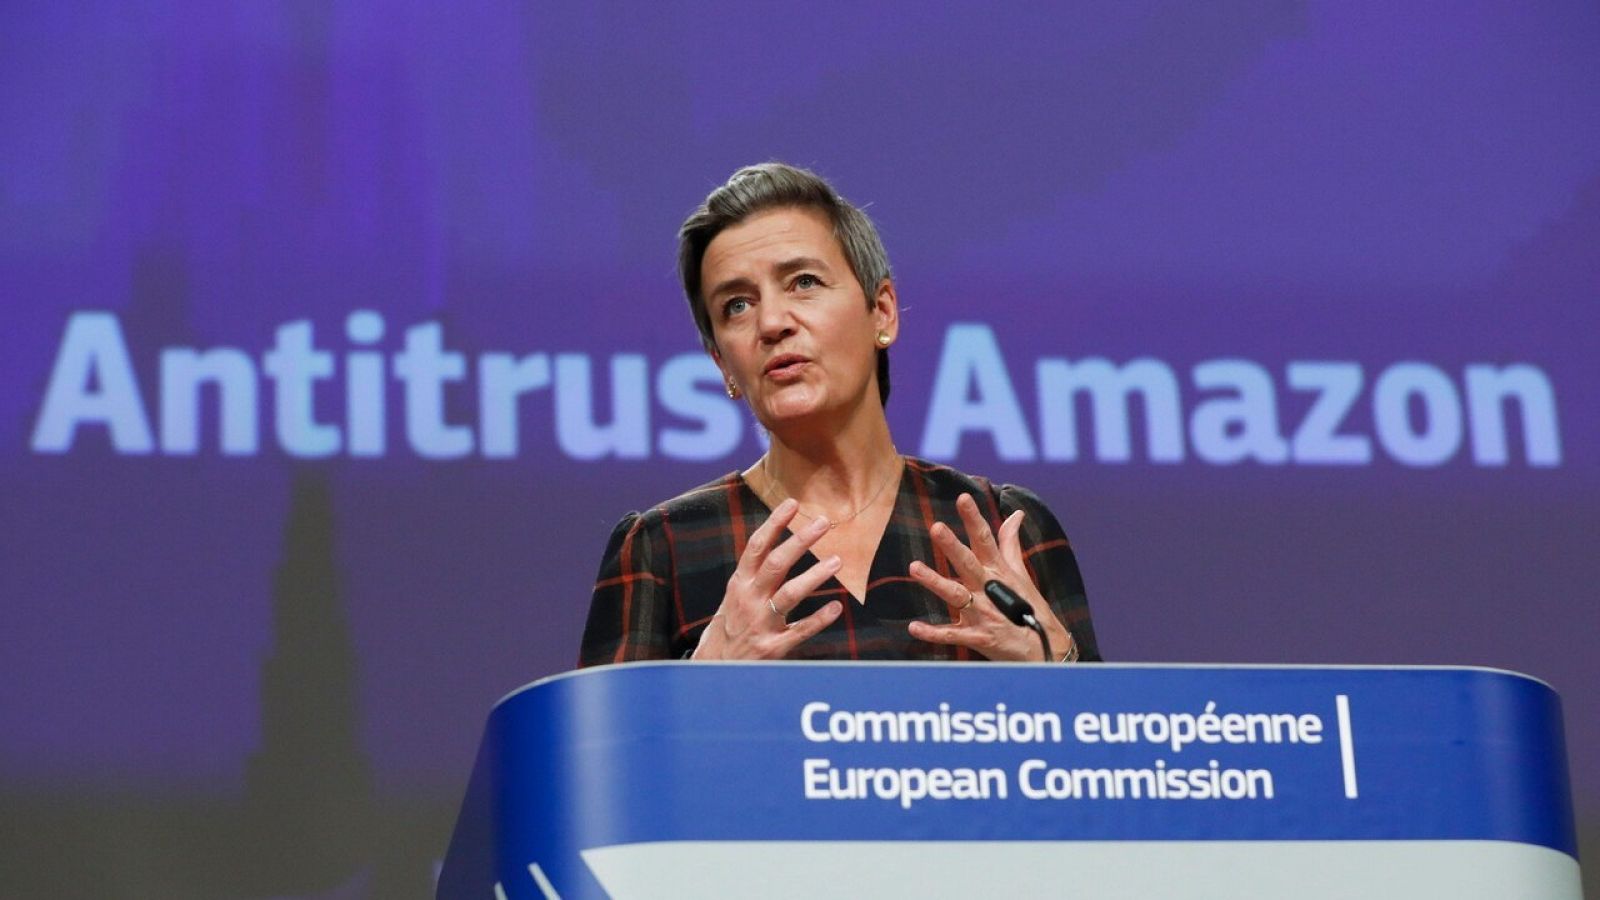 La vicepresidenta de la Comisión Europea, Margrethe Vestager, anuncia en Bruselas la demanda contra Amazon por abuso de poder. Efe/Epa/Olivier Hoslet. 